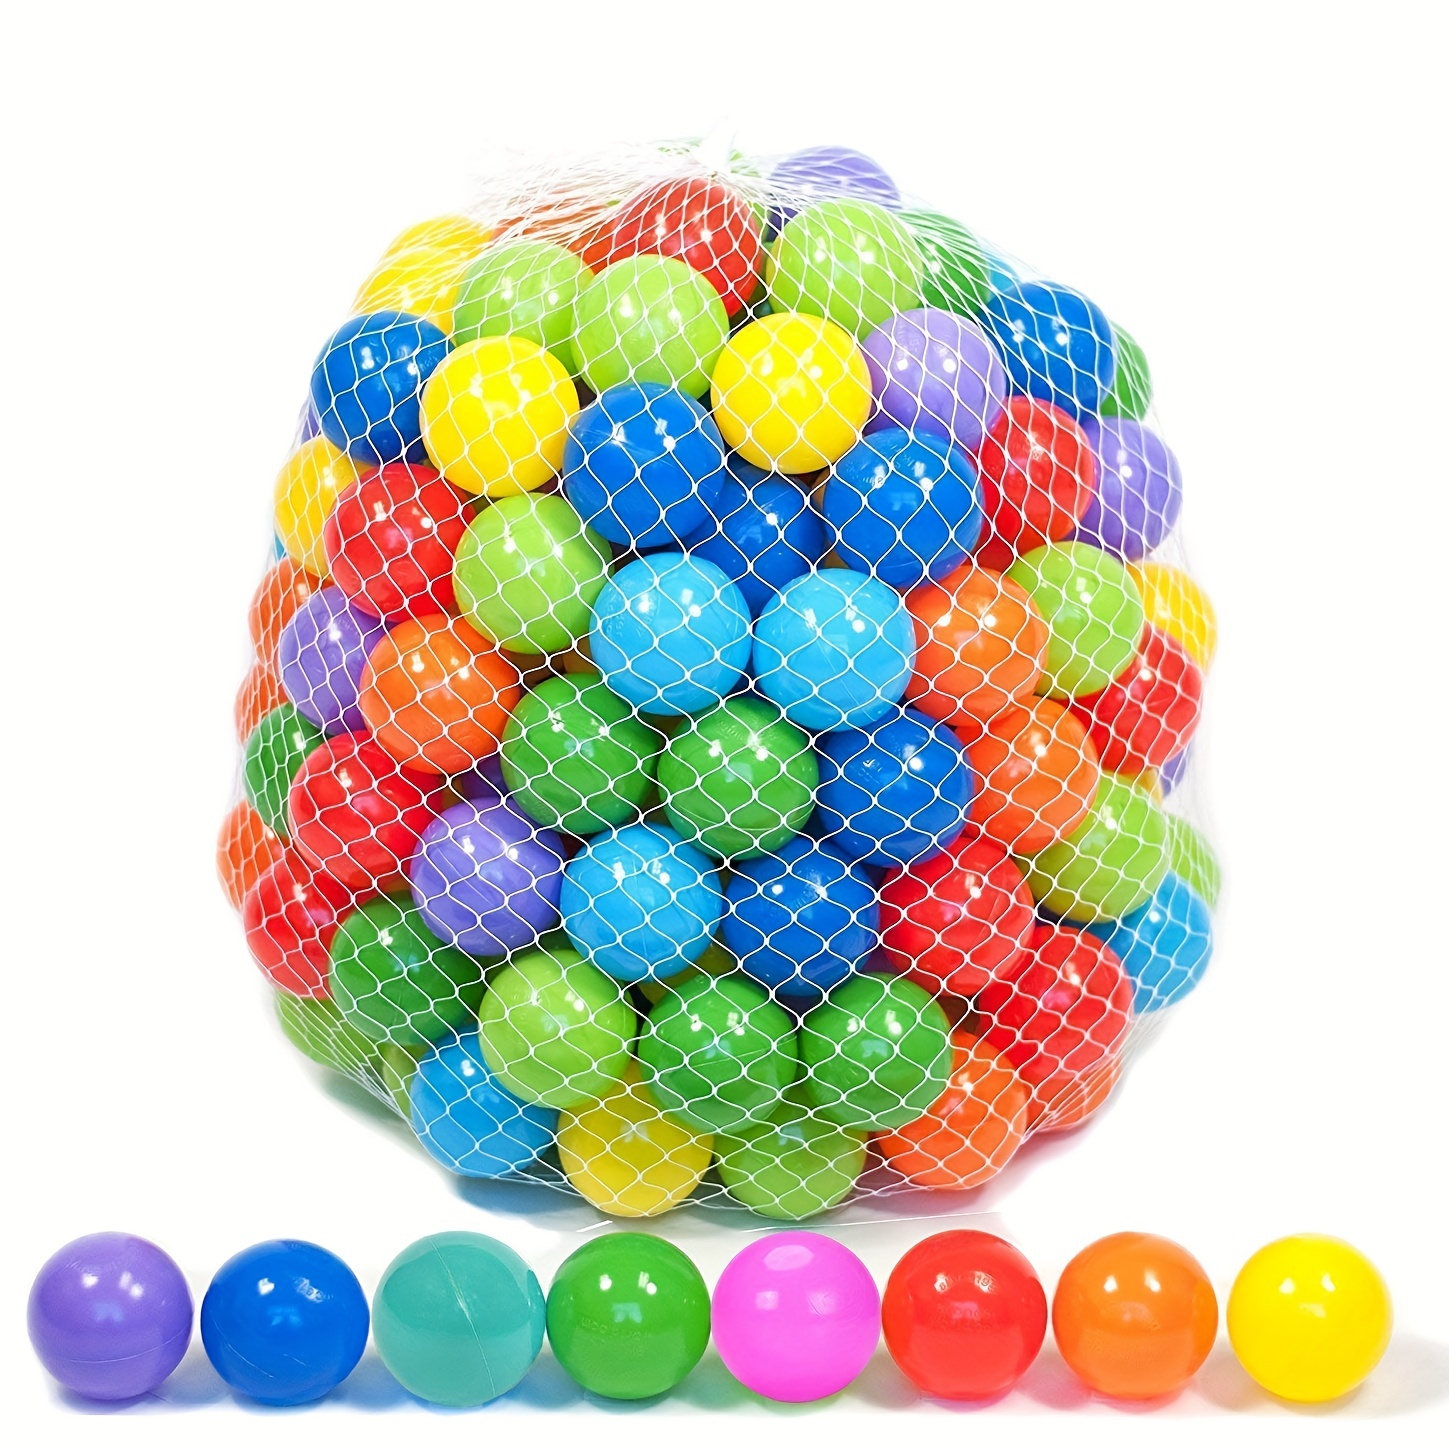 little balls